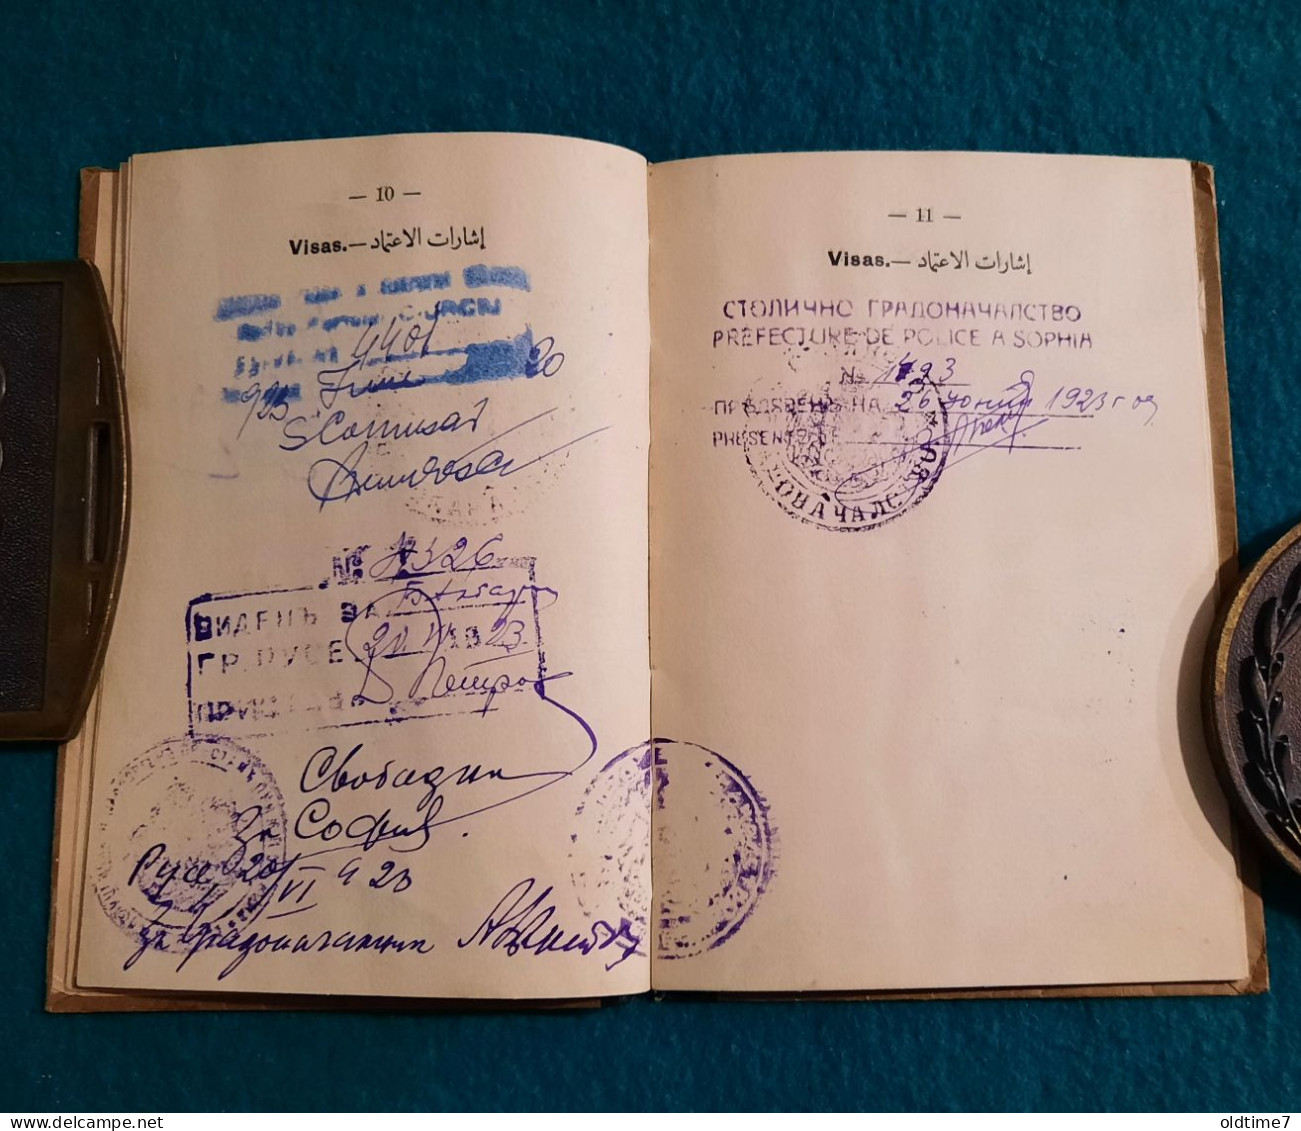 Egipt Laisez Passer  passport  1923 pasaporte, passeport, reisepass